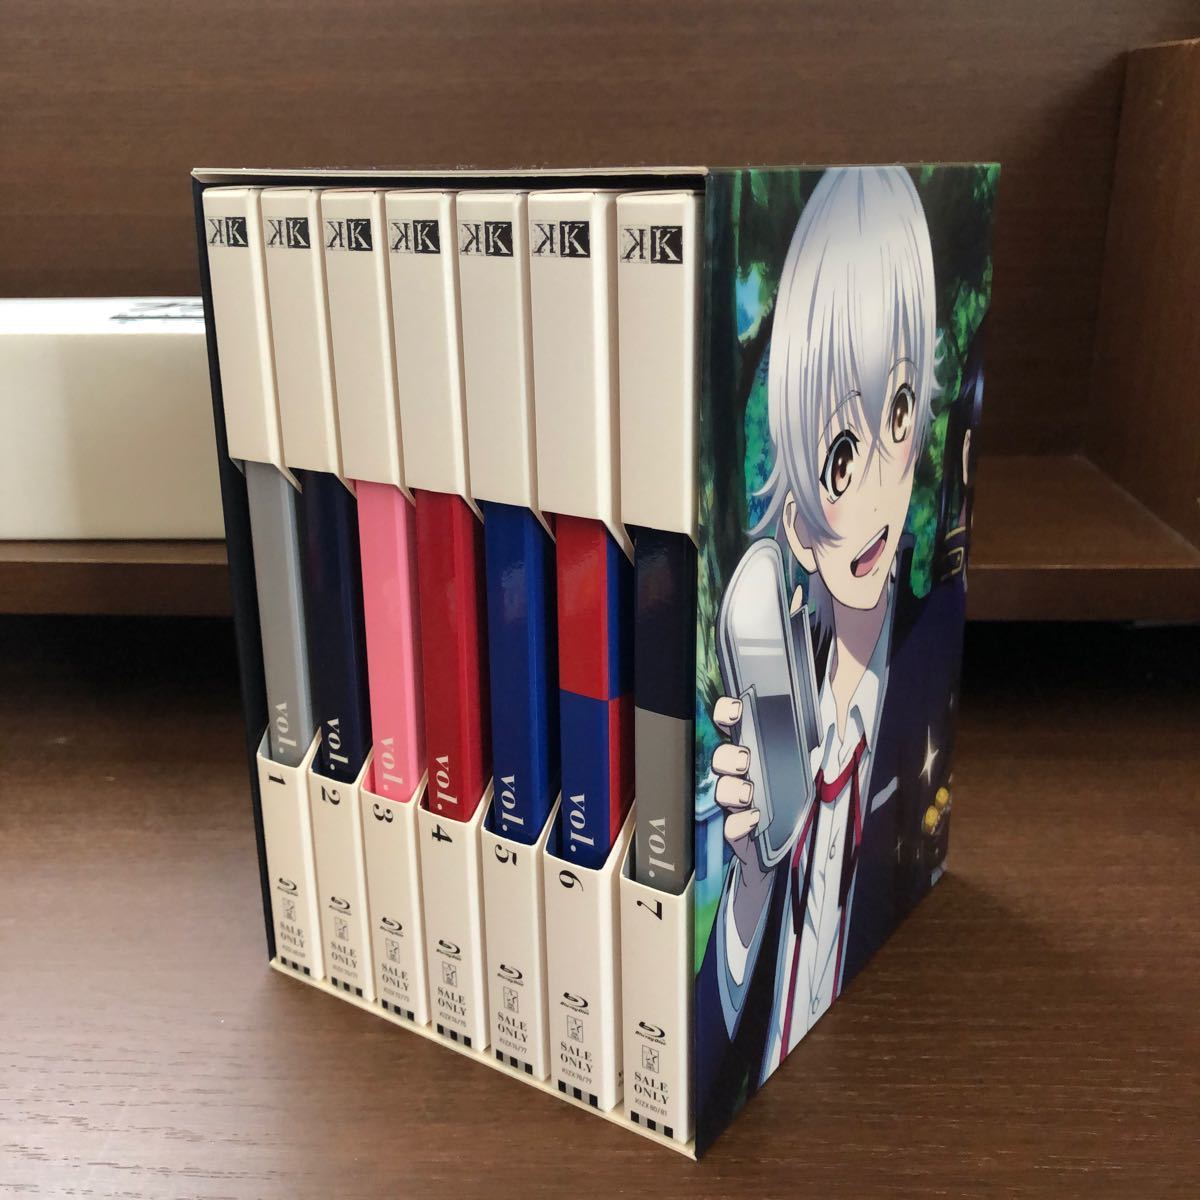 【期間限定版】K vol.1〜7 全巻収納ボックス付きBlu-ray